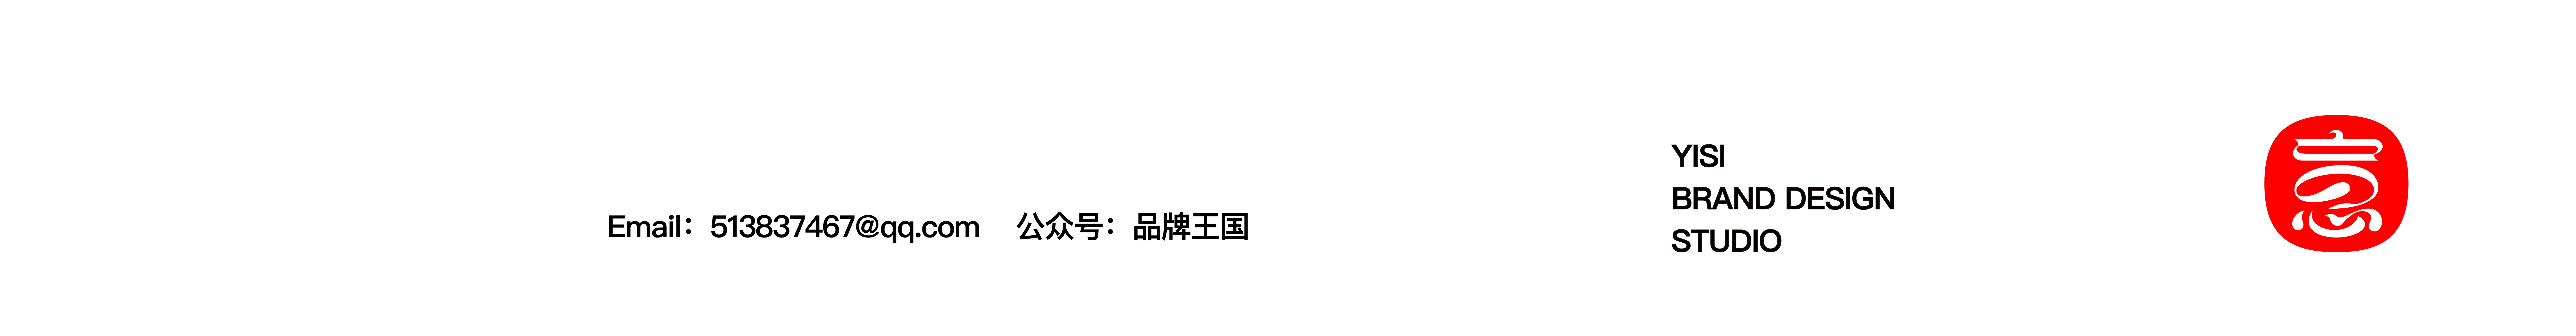 Yang Evan's profile banner